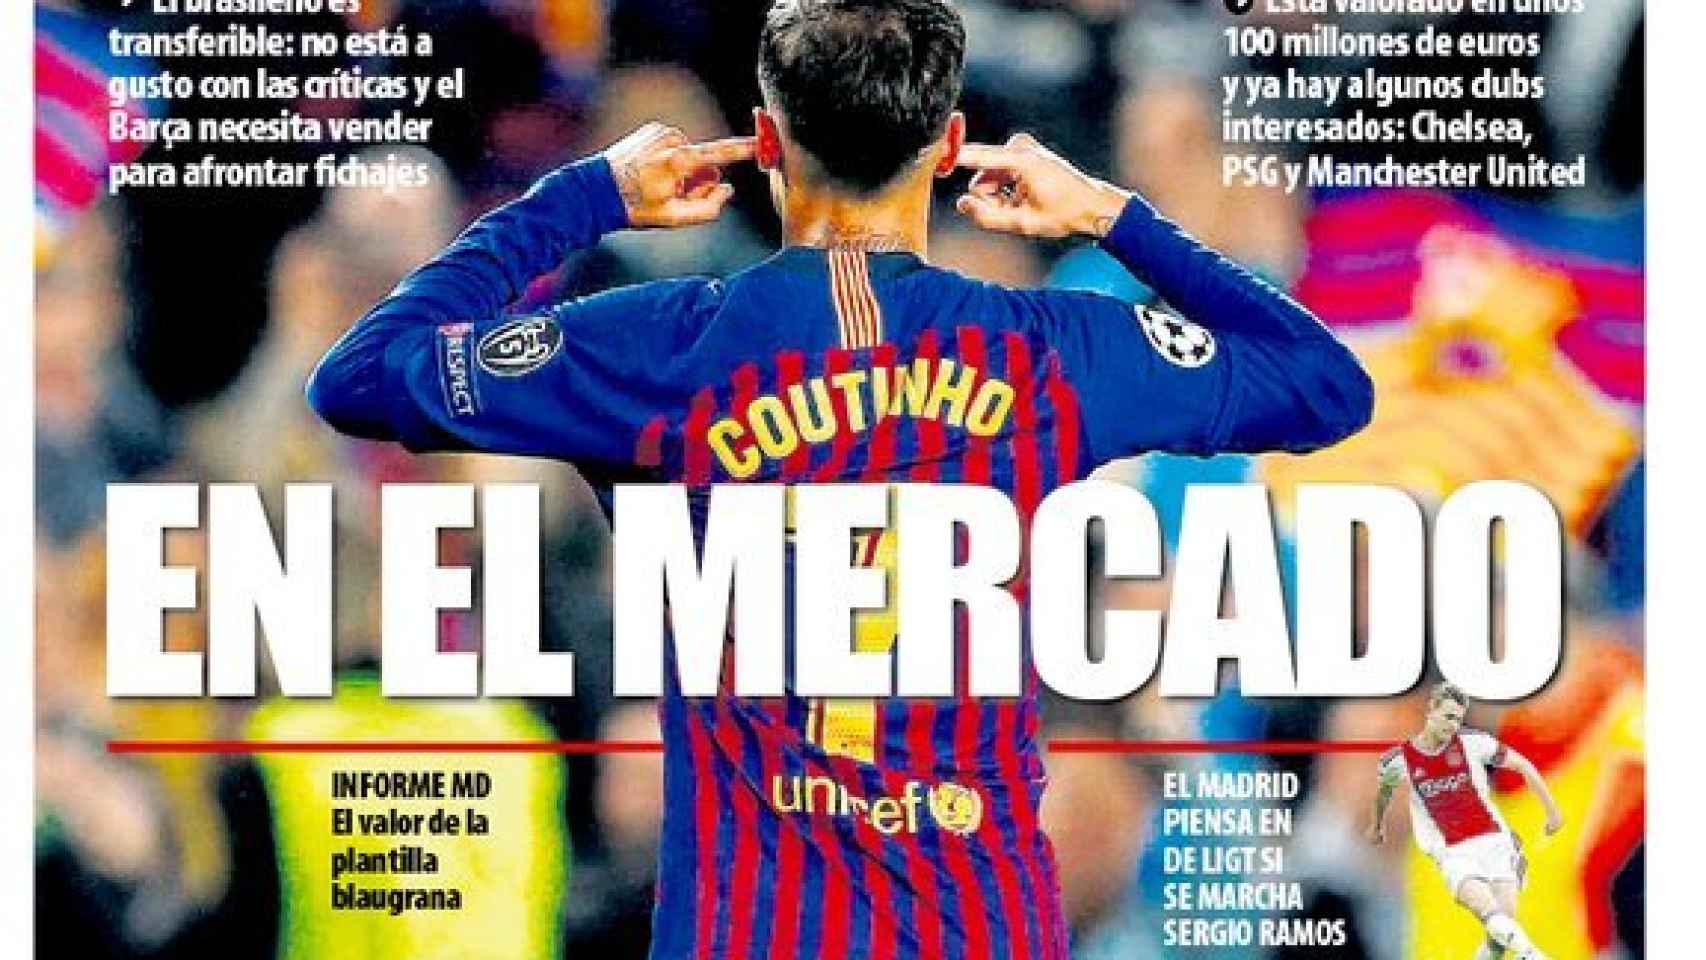 La portada del diario Mundo Deportivo (30/05/2019)